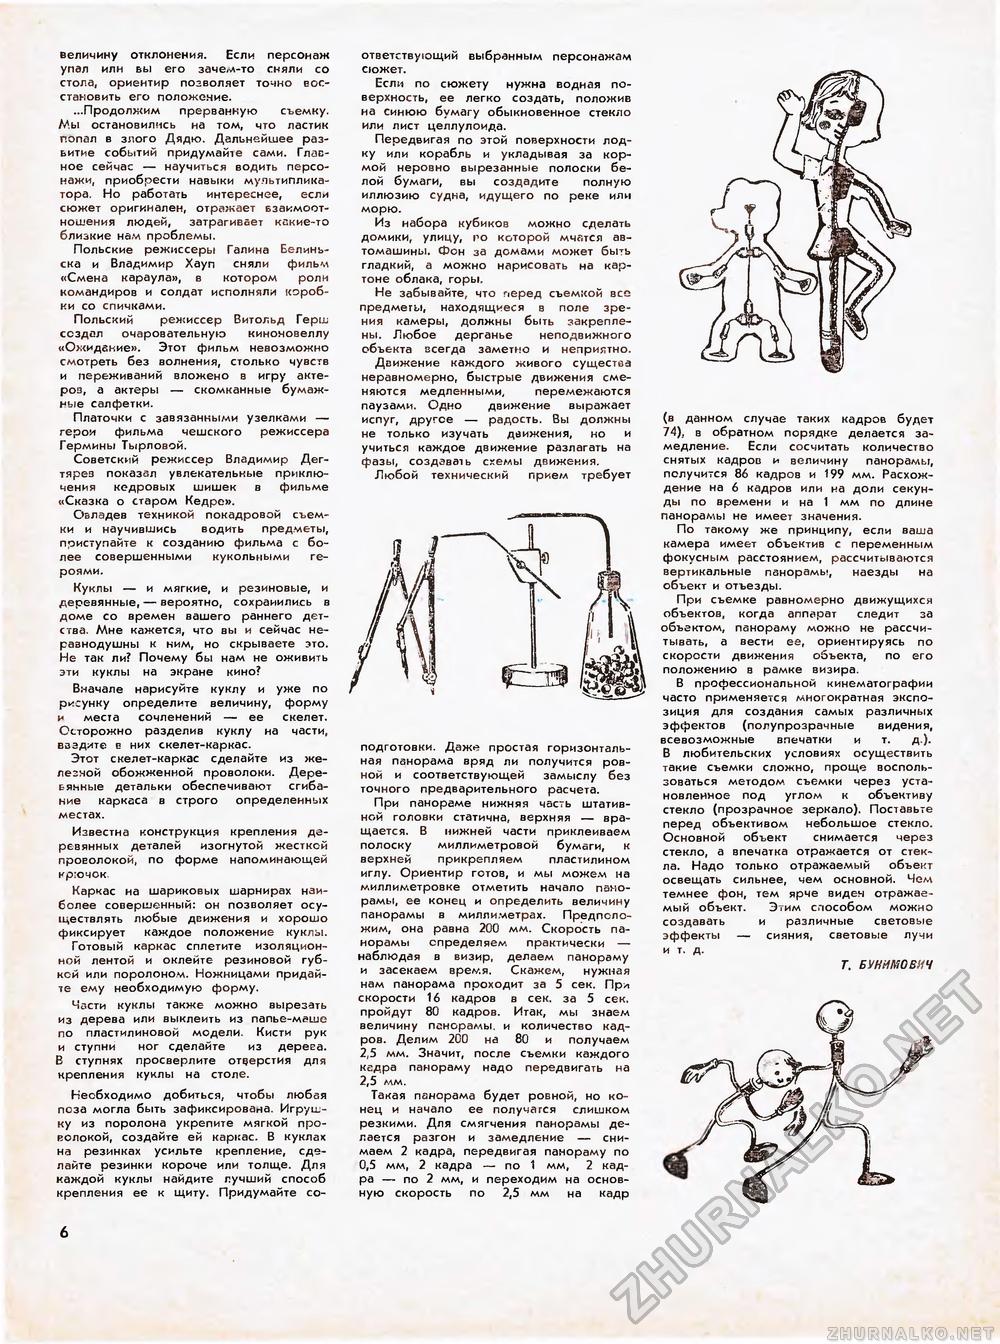 Юный техник - для умелых рук 1973-01, страница 6